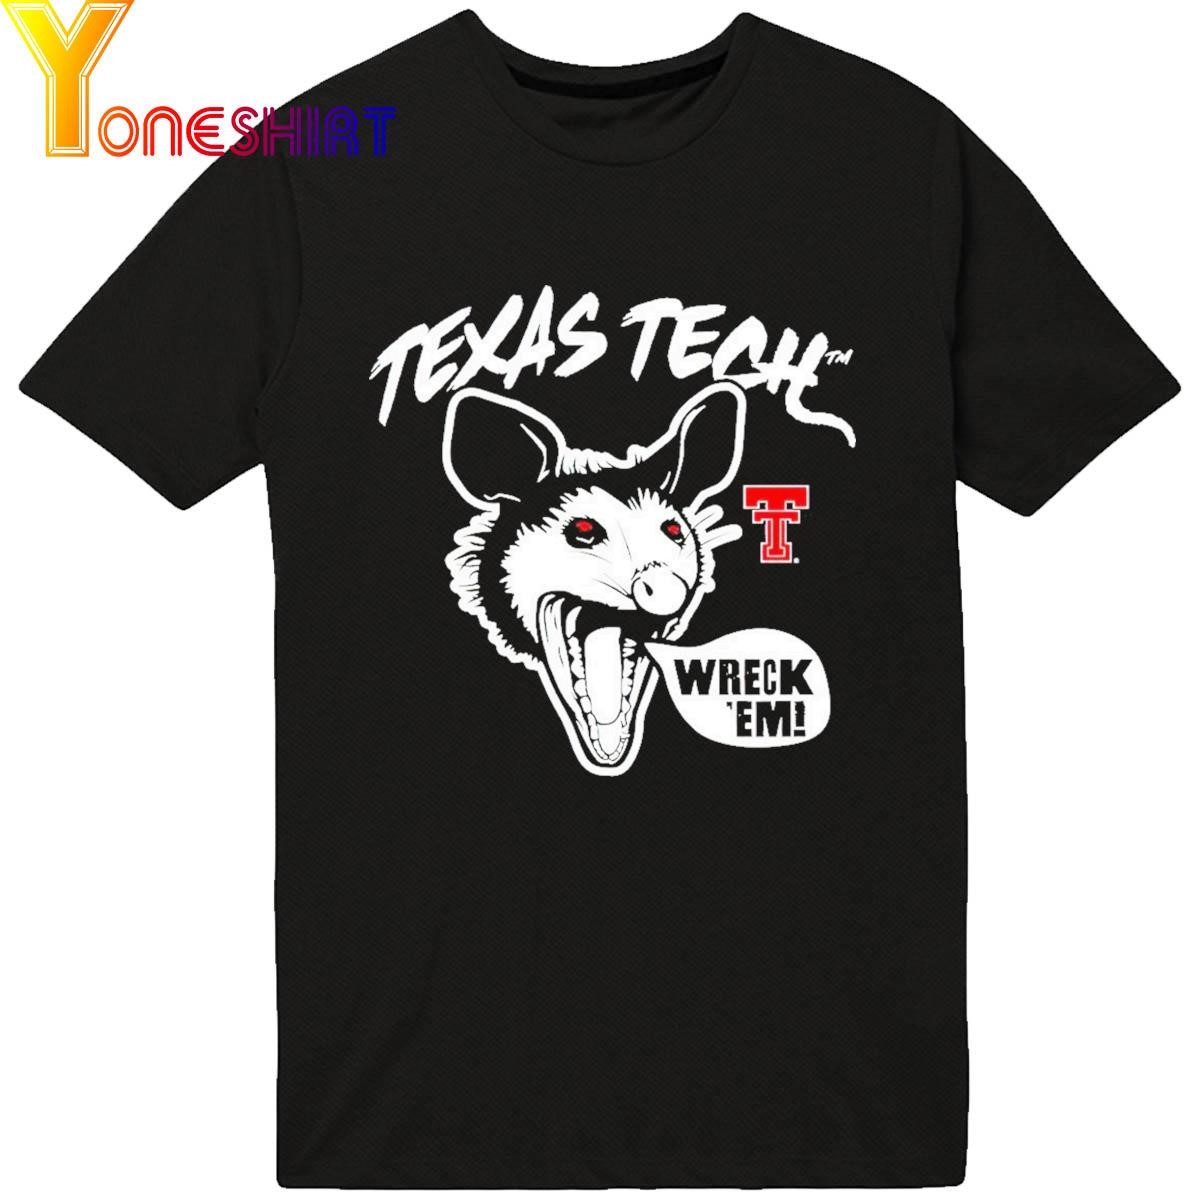 Texas Tech Wreck Em Shirt